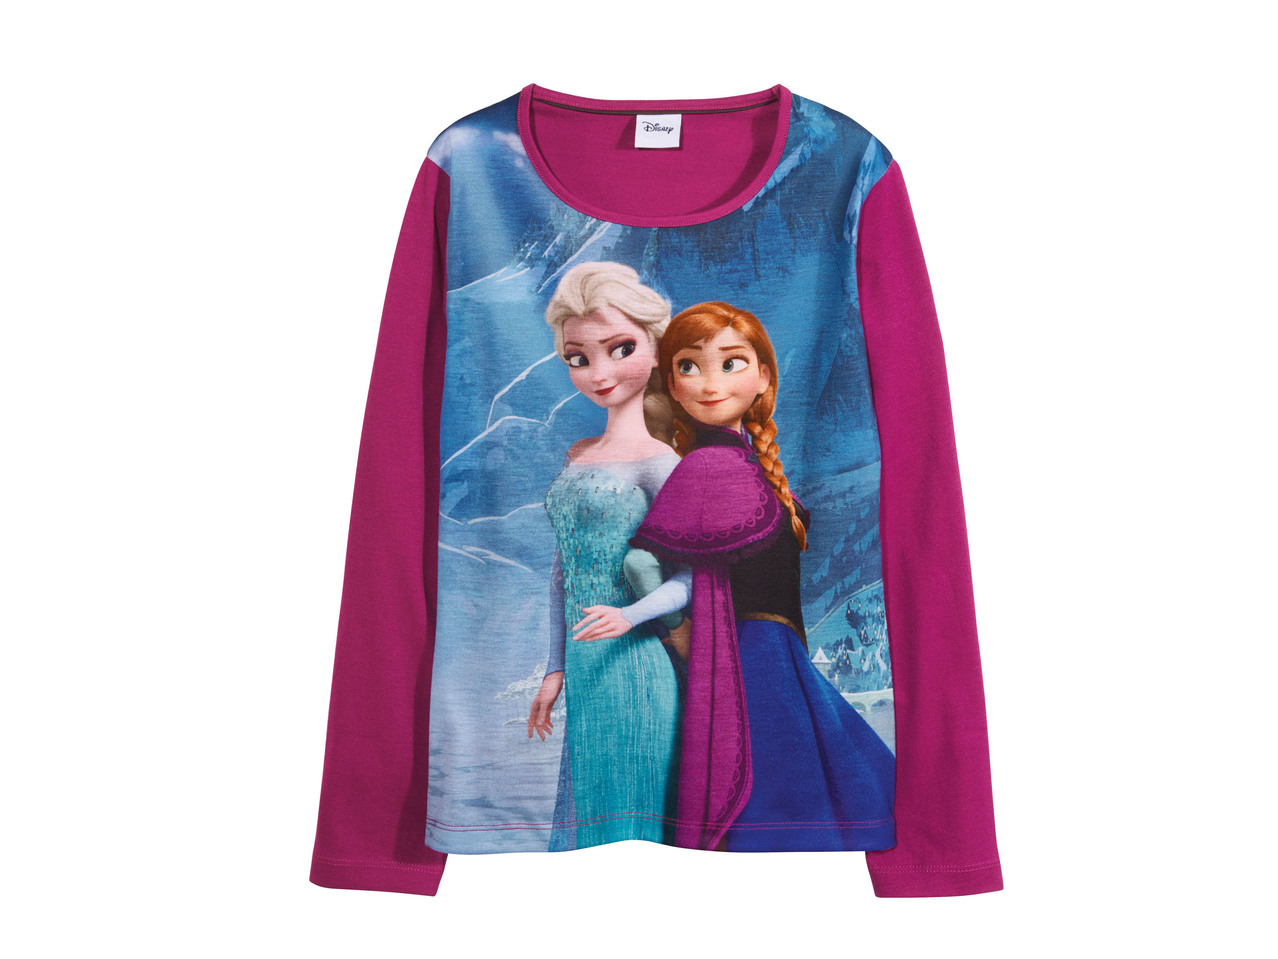 Girls' Long-Sleeved Shirt "Frozen"